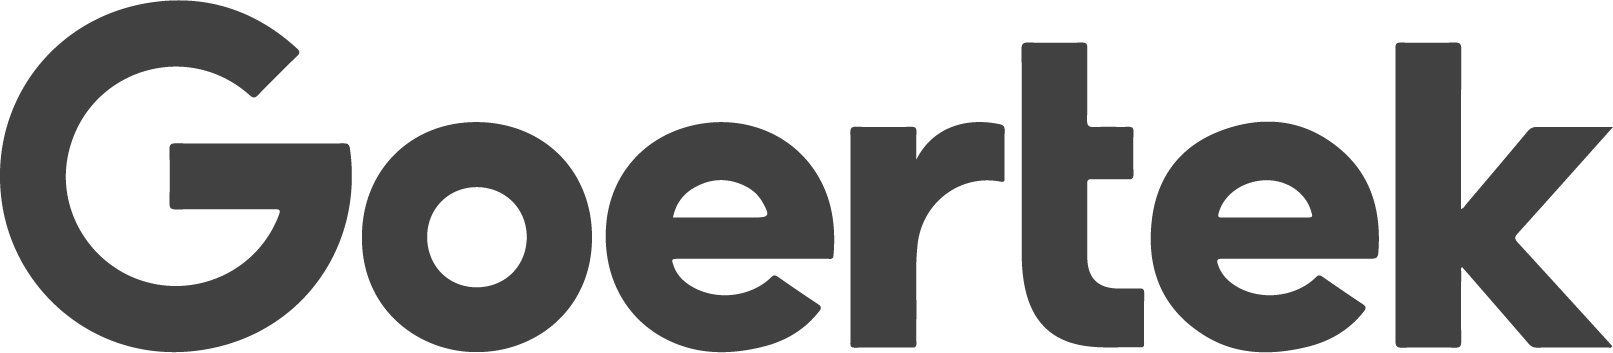 Goertek Logo png